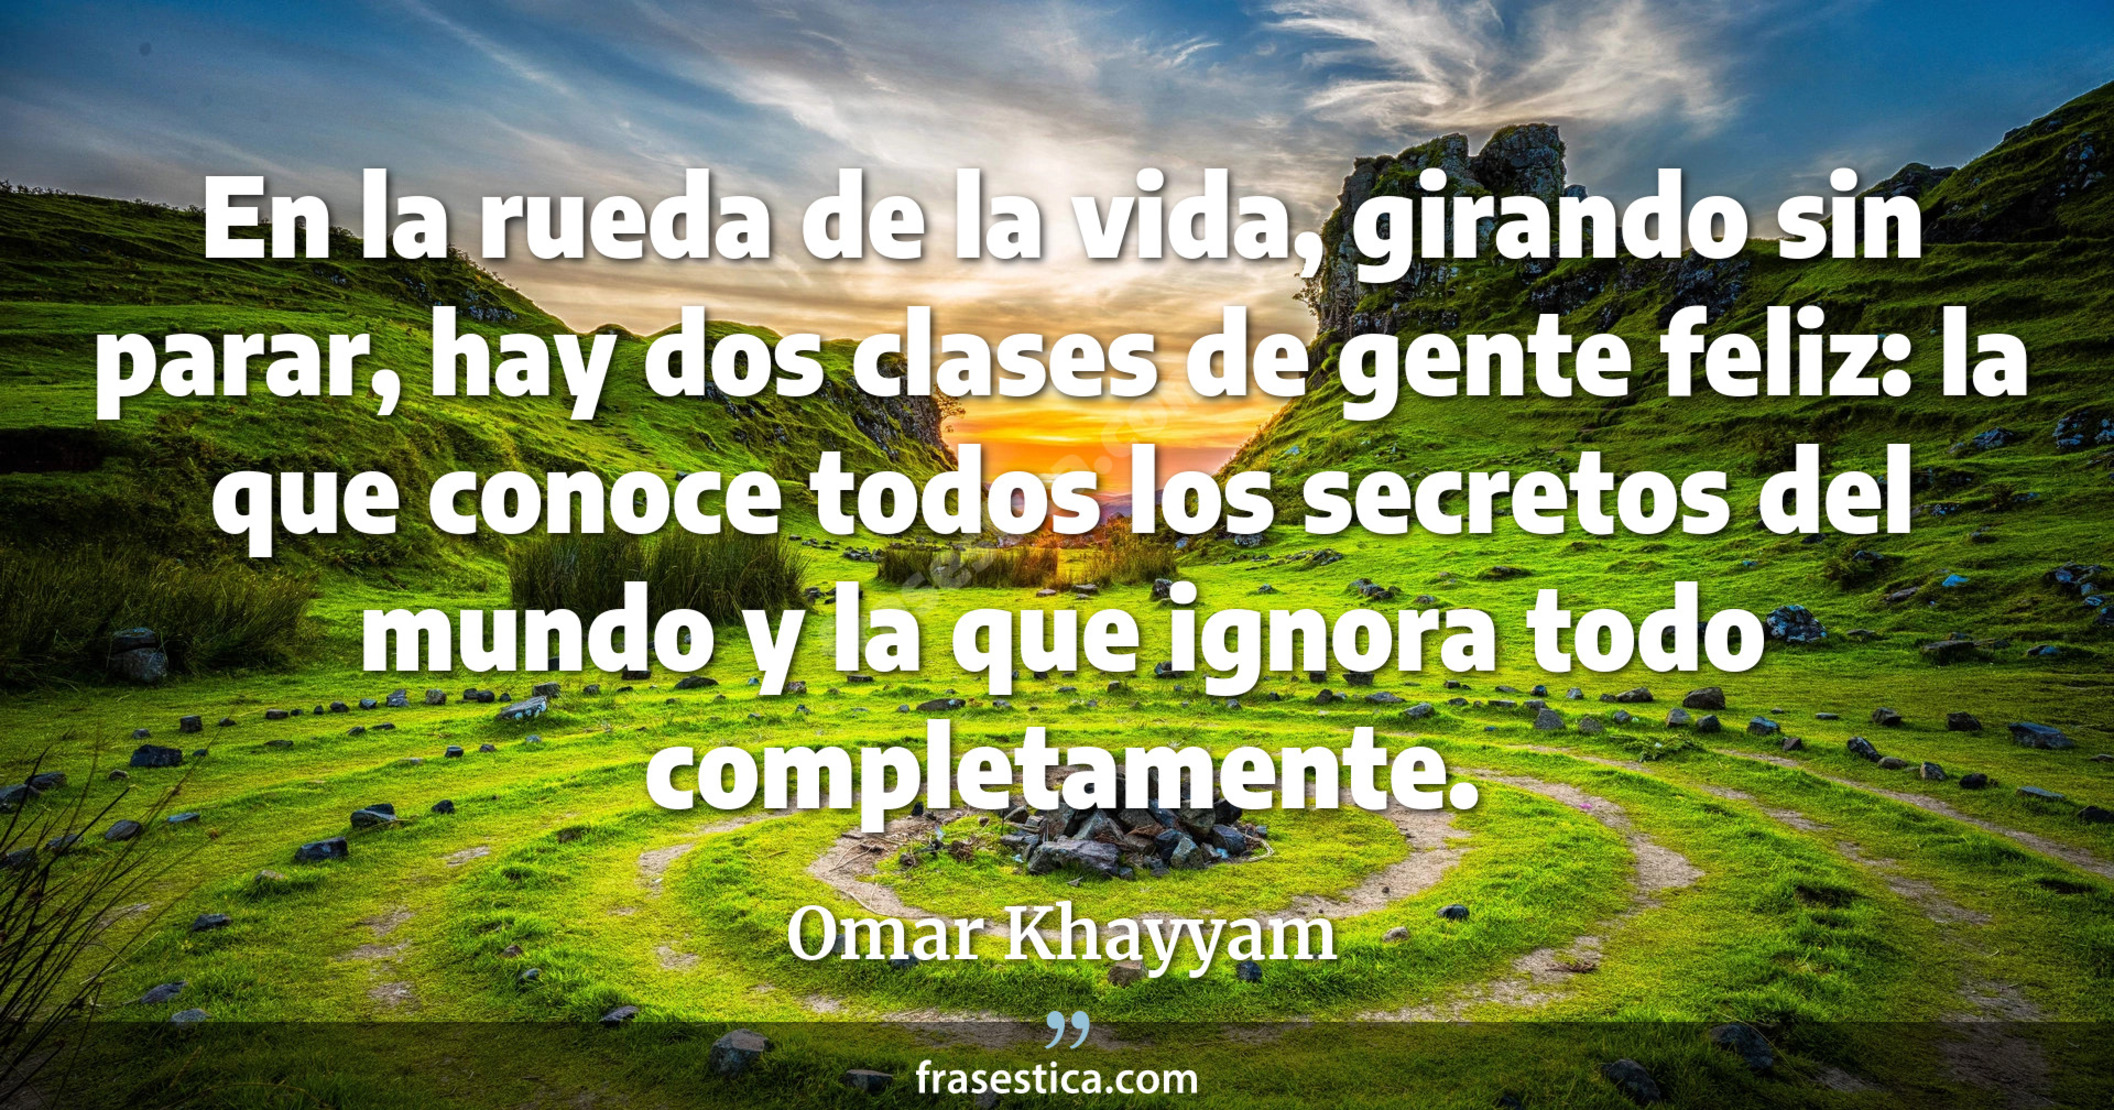 En la rueda de la vida, girando sin parar, hay dos clases de gente feliz: la que conoce todos los secretos del mundo y la que ignora todo completamente. - Omar Khayyam